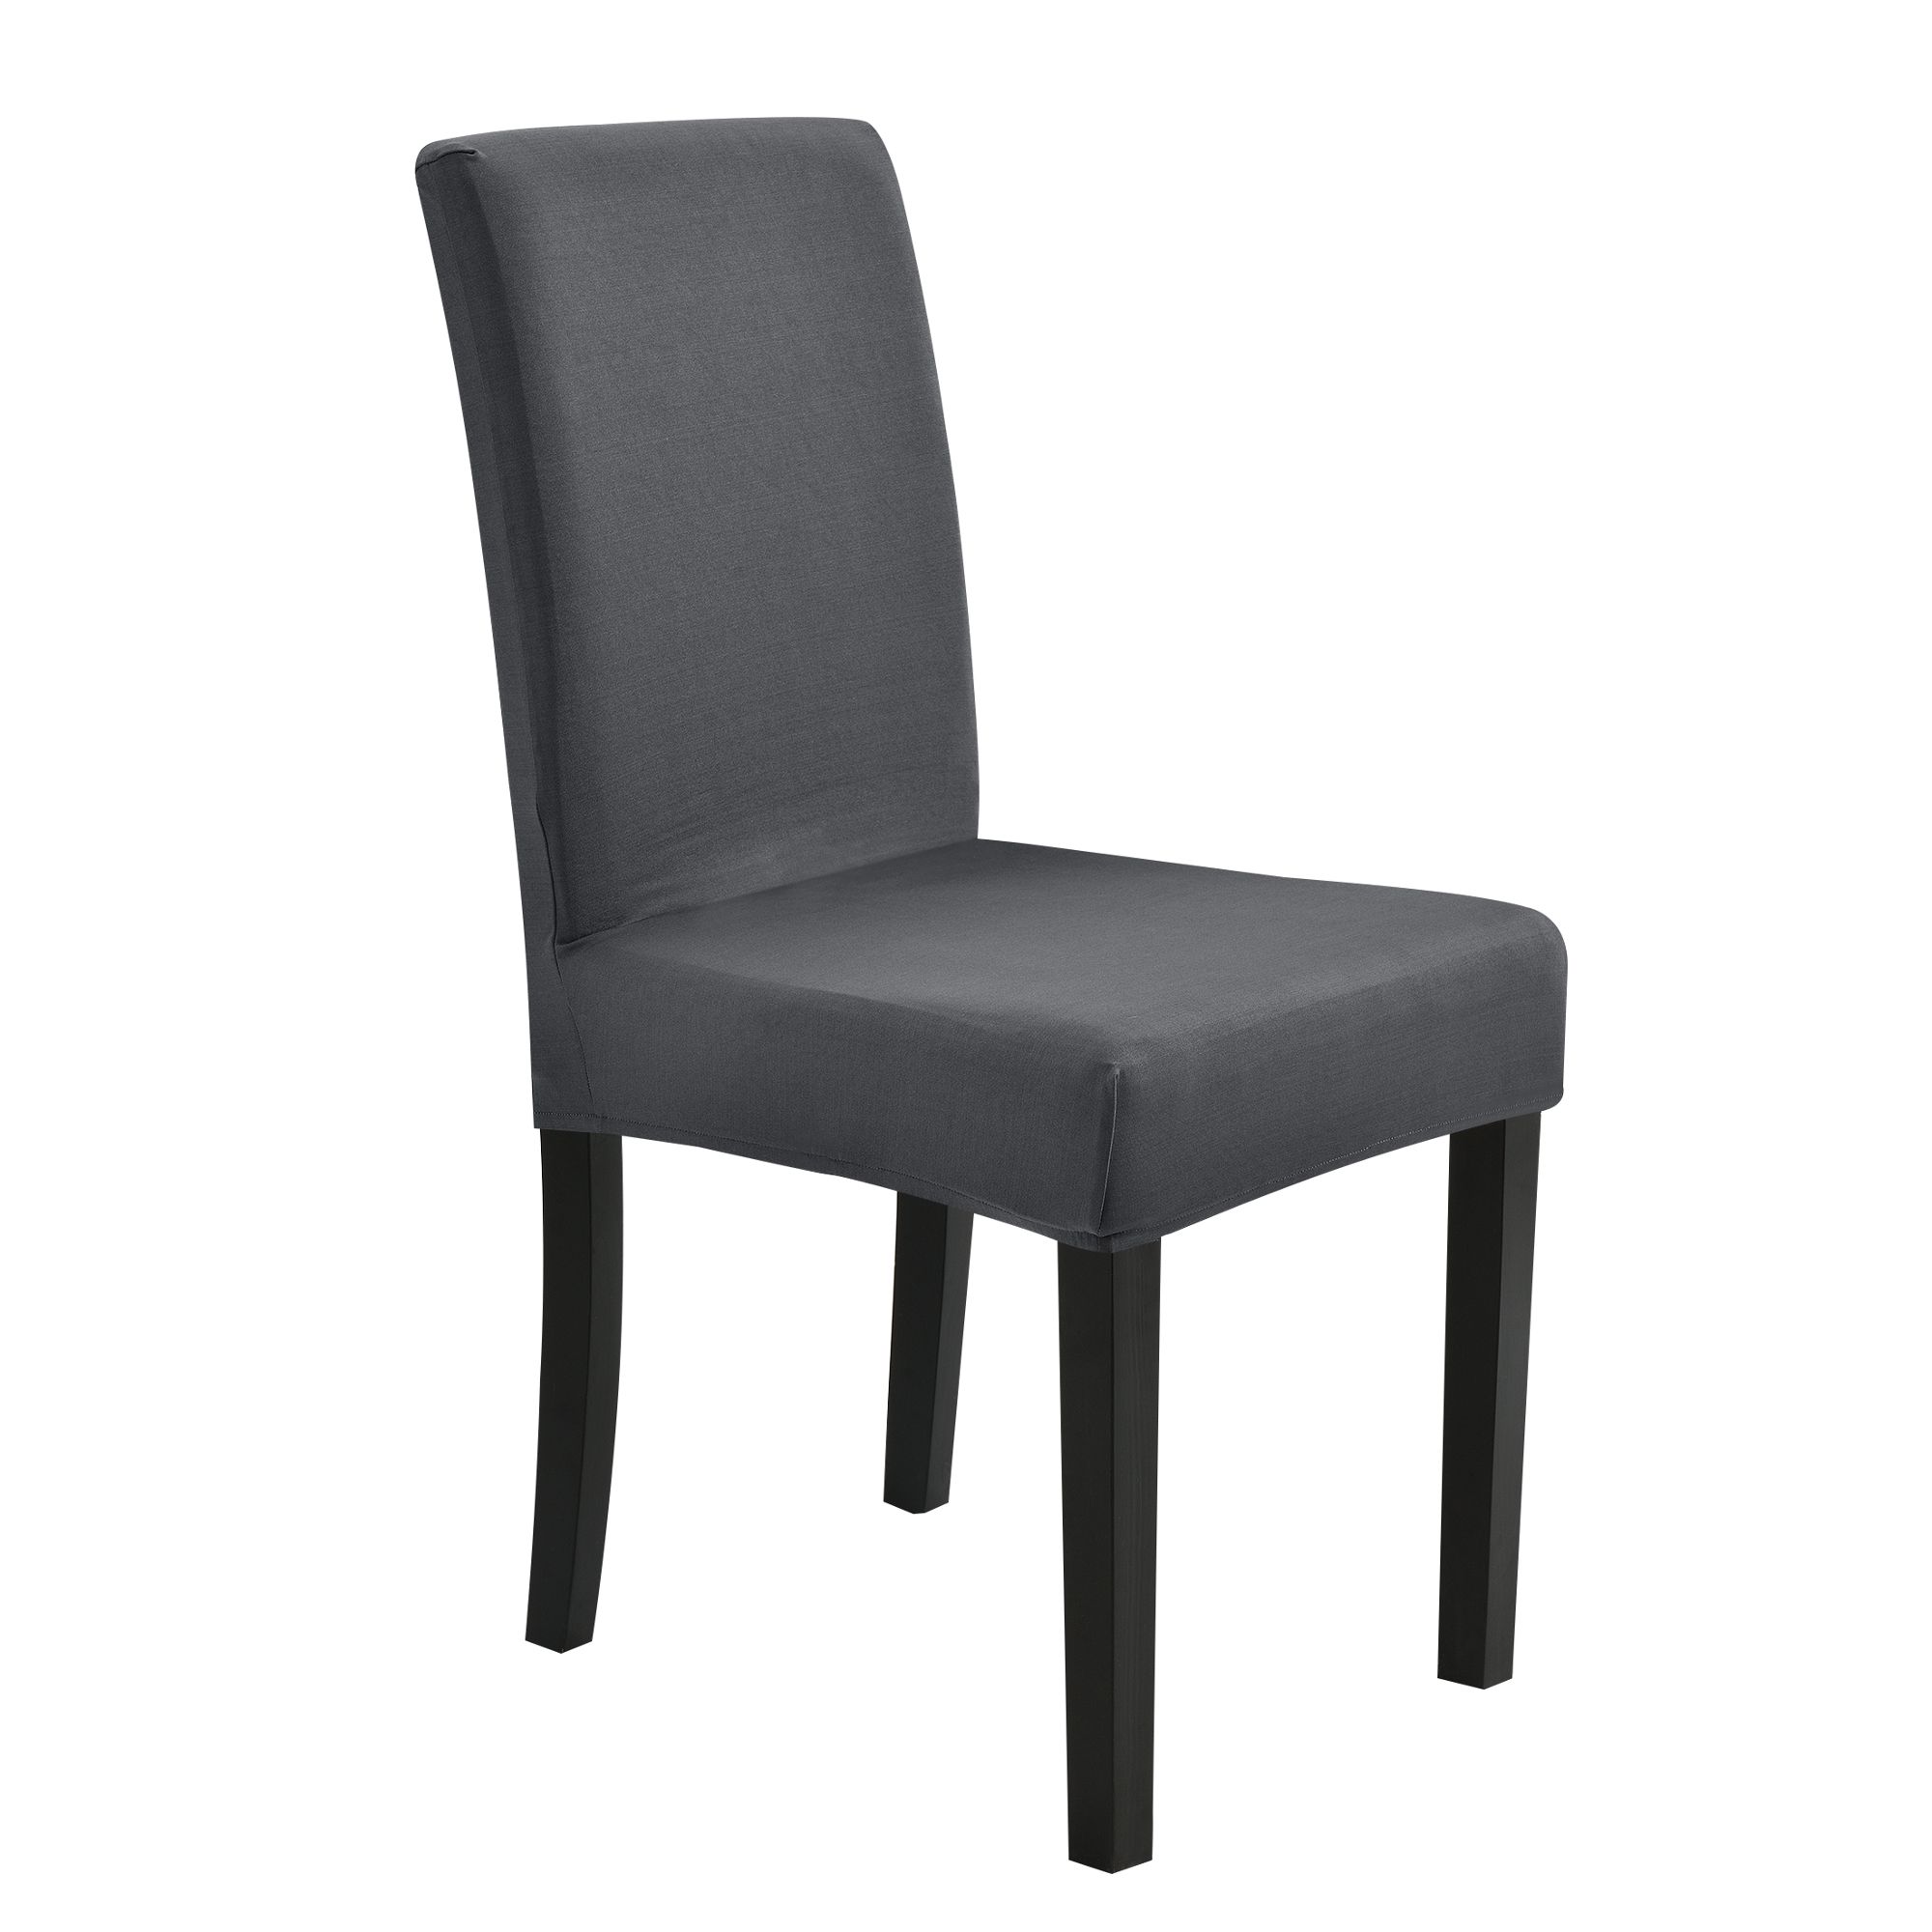 [neu.haus]® Potah na židle - tmavě šedý - napínací streč na židle různych rozměrů - H.T. Trade Service GmbH & Co. KG